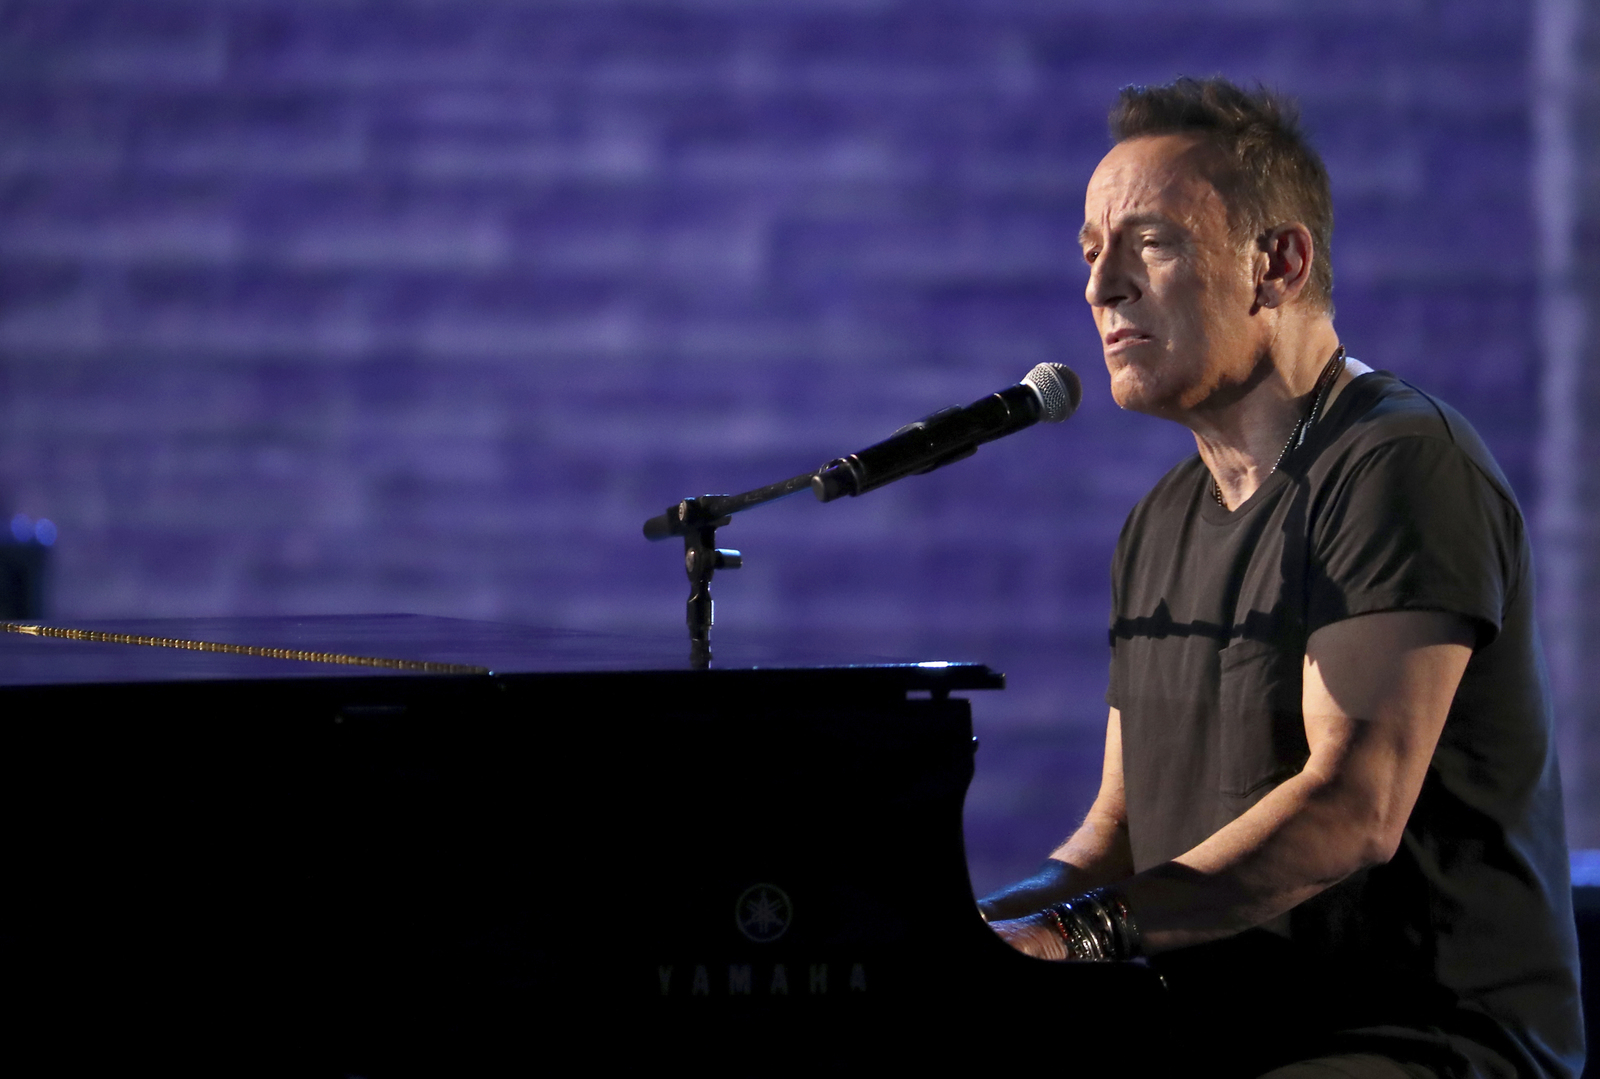 Estreno. El documental 'Springsteen on Broadway' se estrena el próximo 16 de diciembre en Netflix. (ARCHIVO)